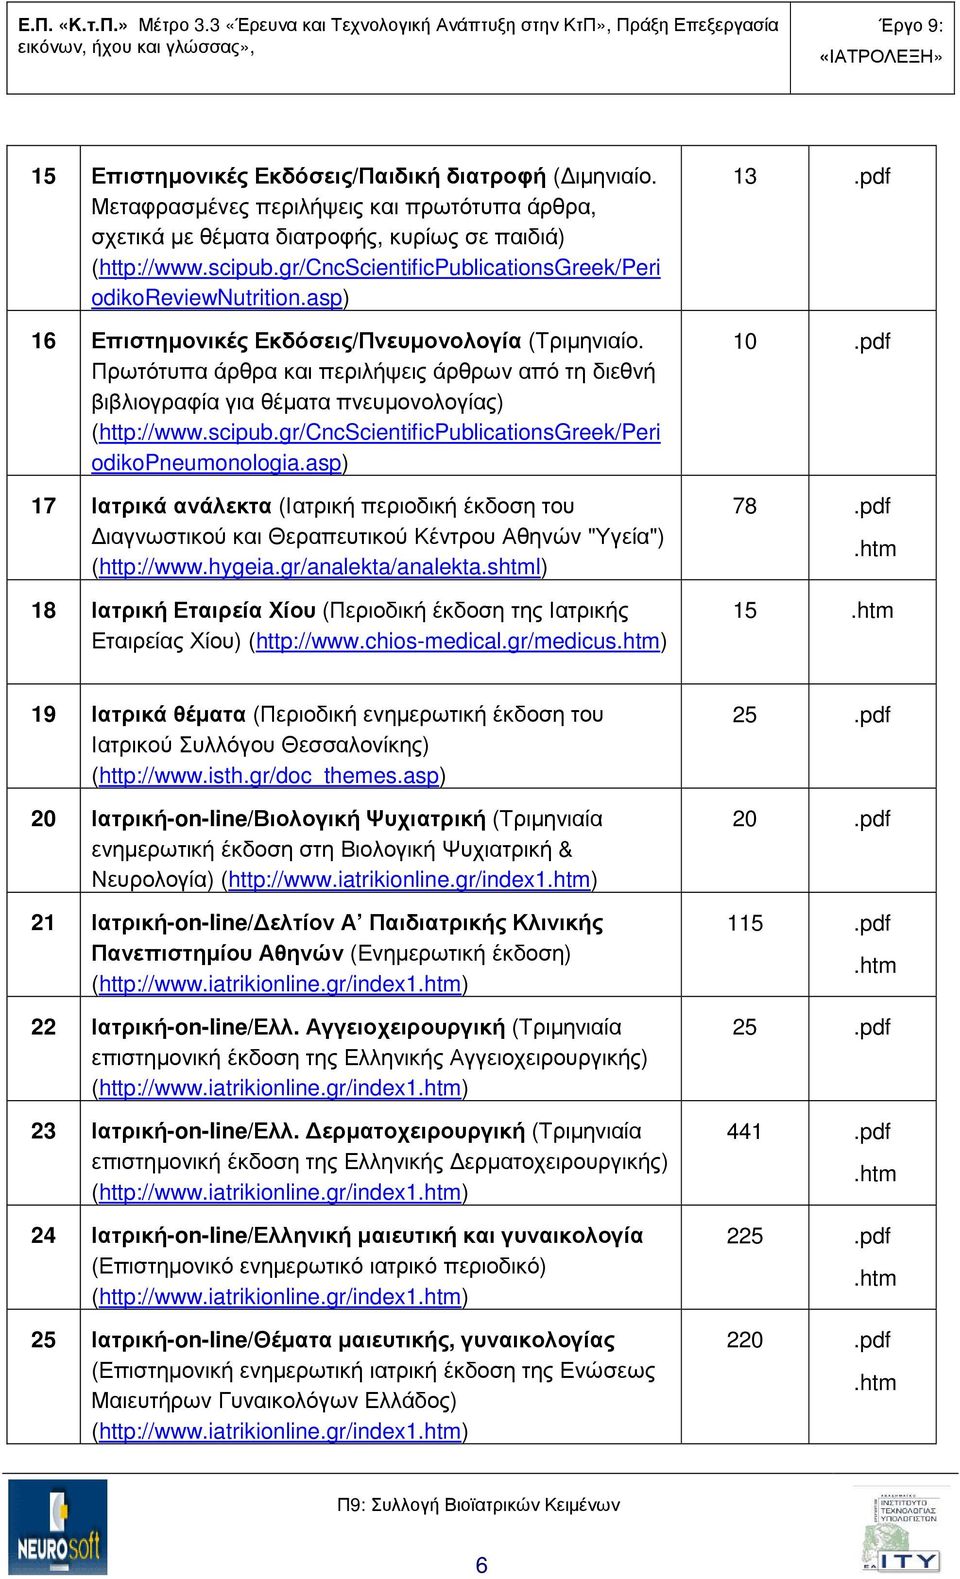 asp) 17 Ιατρικά ανάλεκτα (Ιατρική περιοδική έκδοση του ιαγνωστικού και Θεραπευτικού Κέντρου Αθηνών "Υγεία") (http://www.hygeia.gr/analekta/analekta.